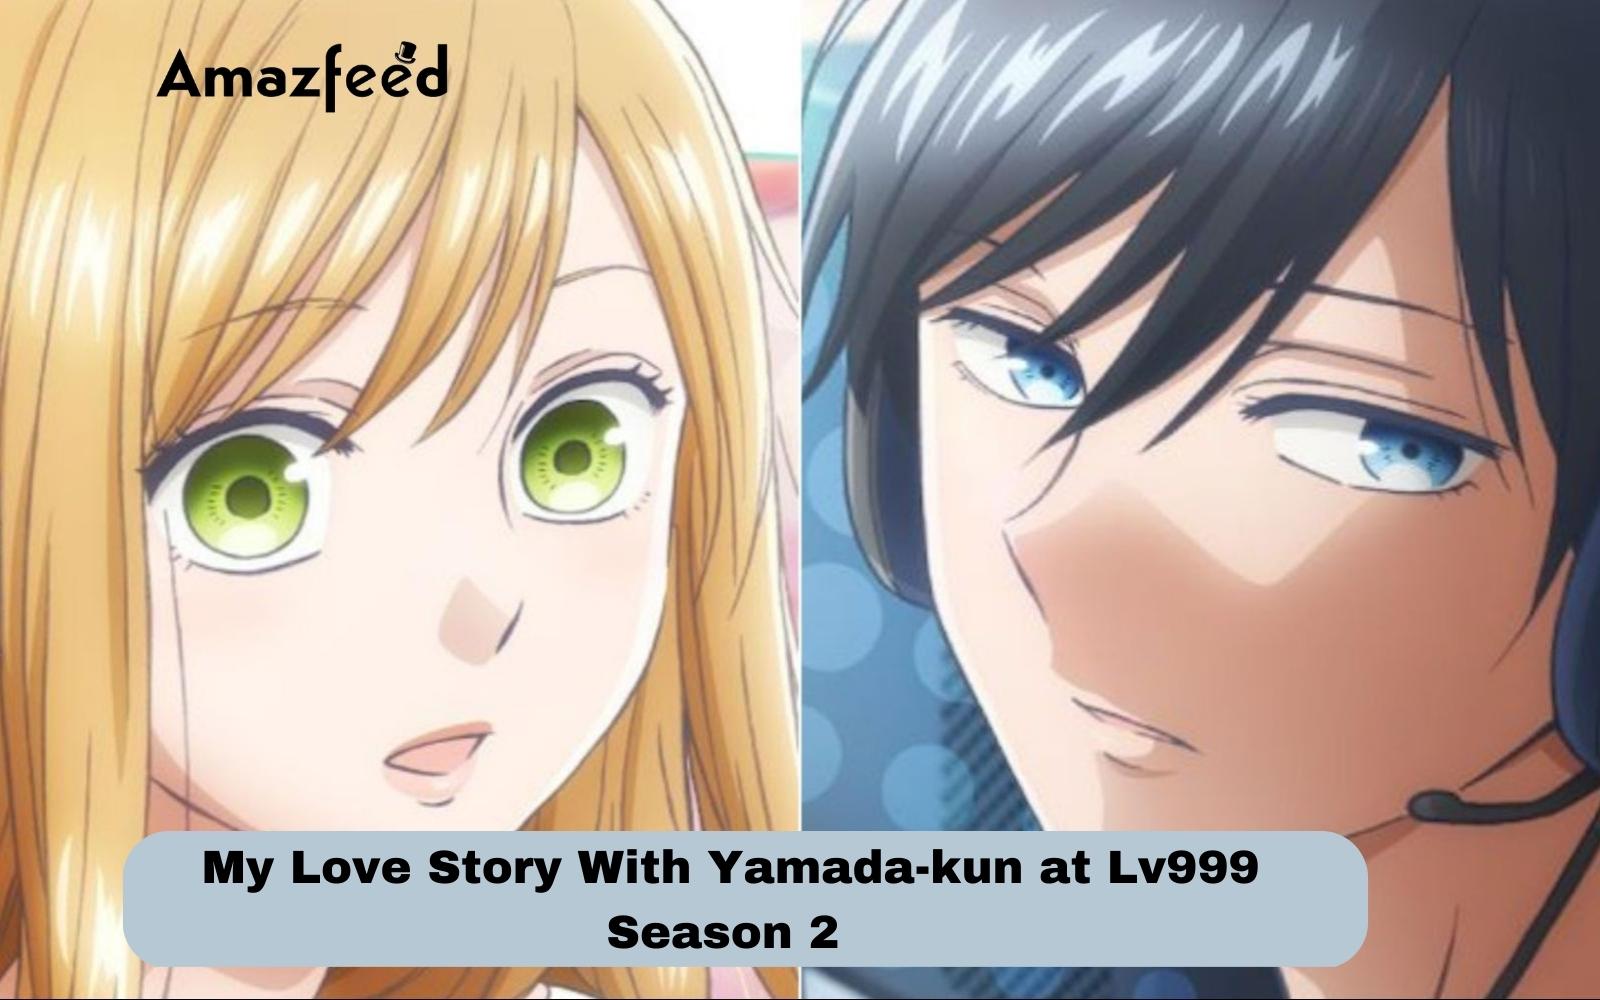 My Love Story with Yamada-kun at Lv999 Season 2: Exploring the